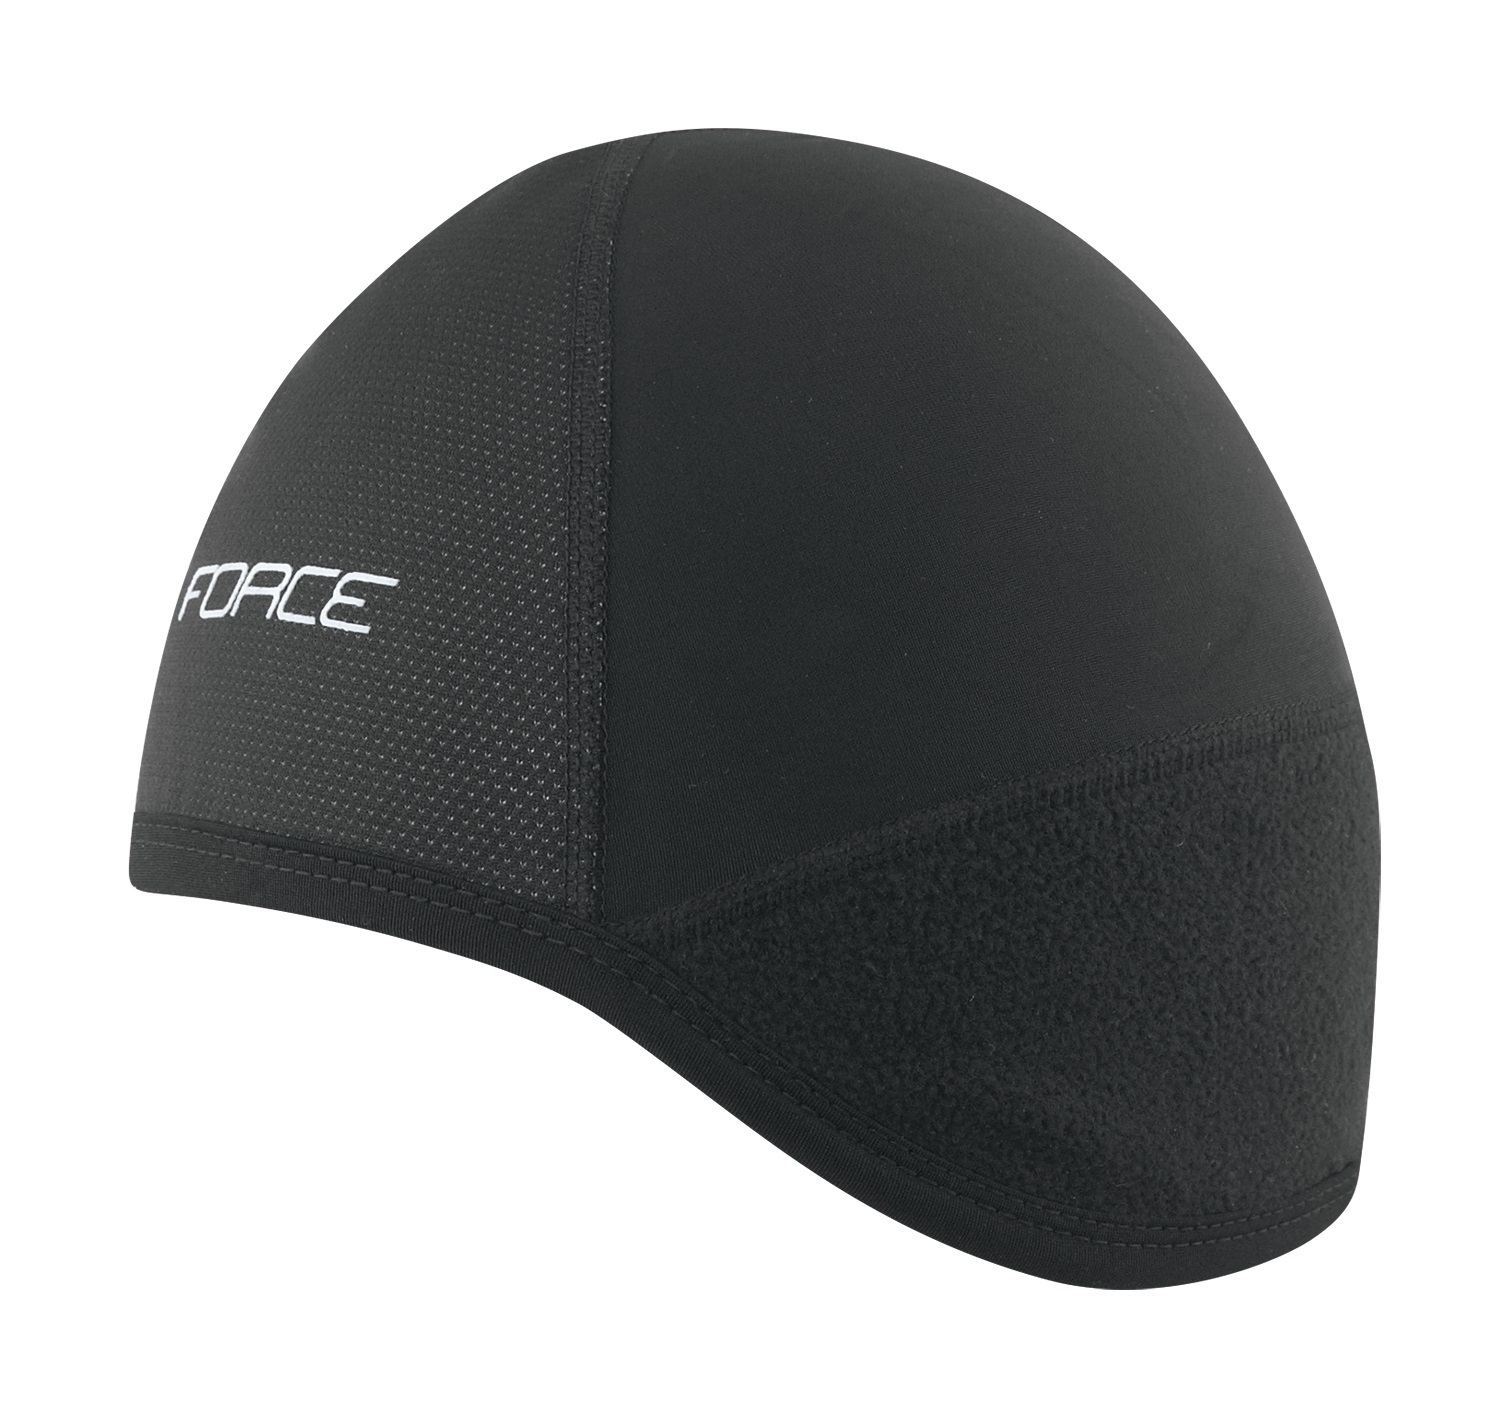 hat-cap-under-helmet-force-winter-black-